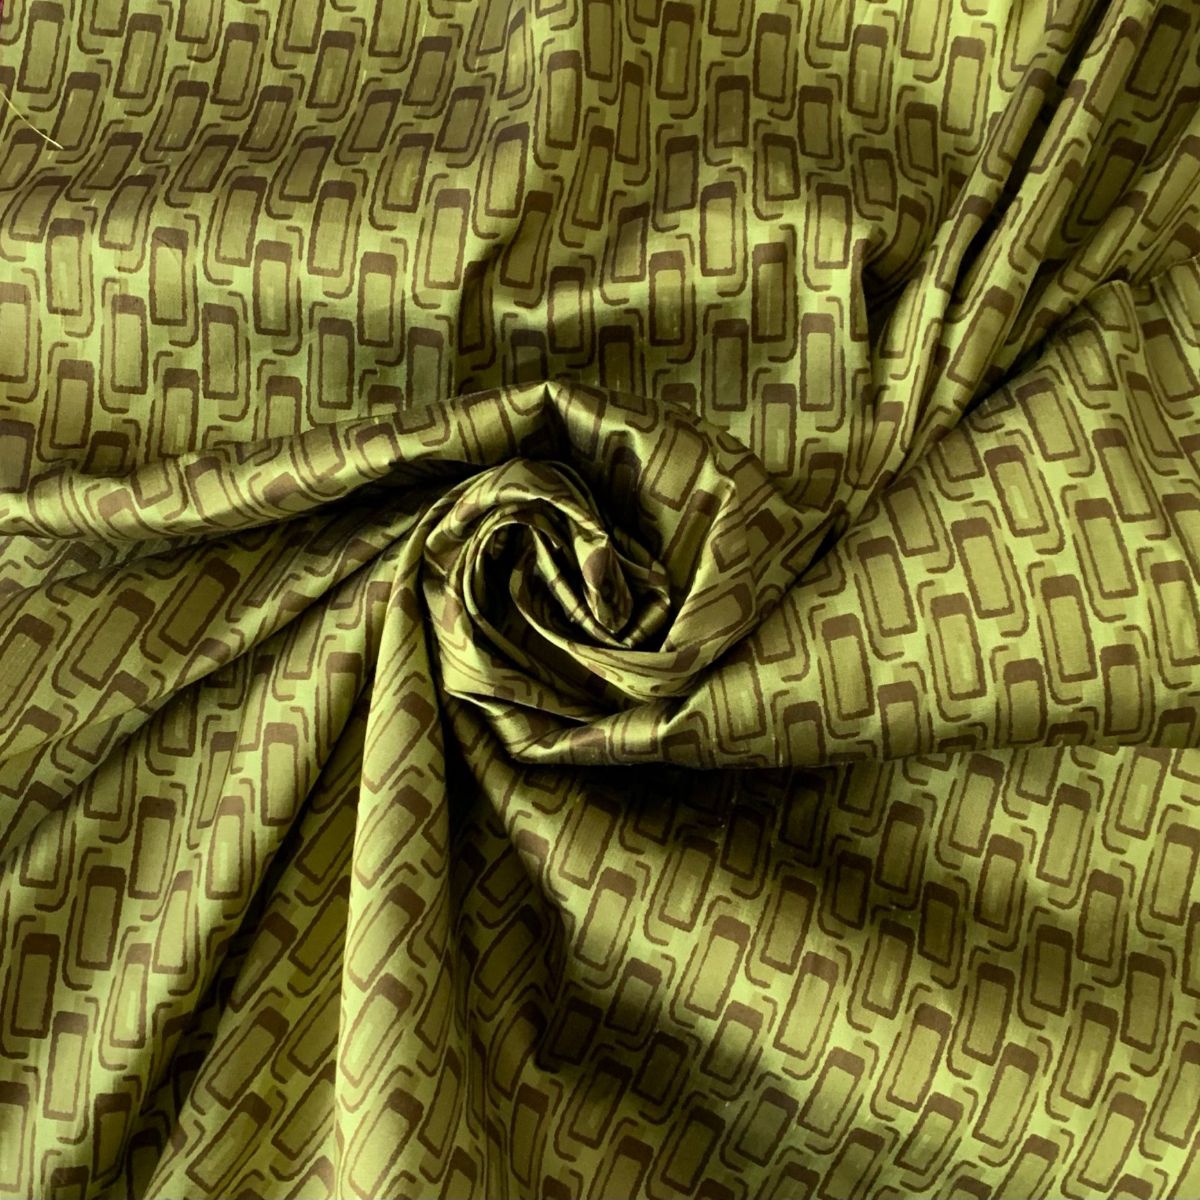 Geometric printed taffeta in green and brown